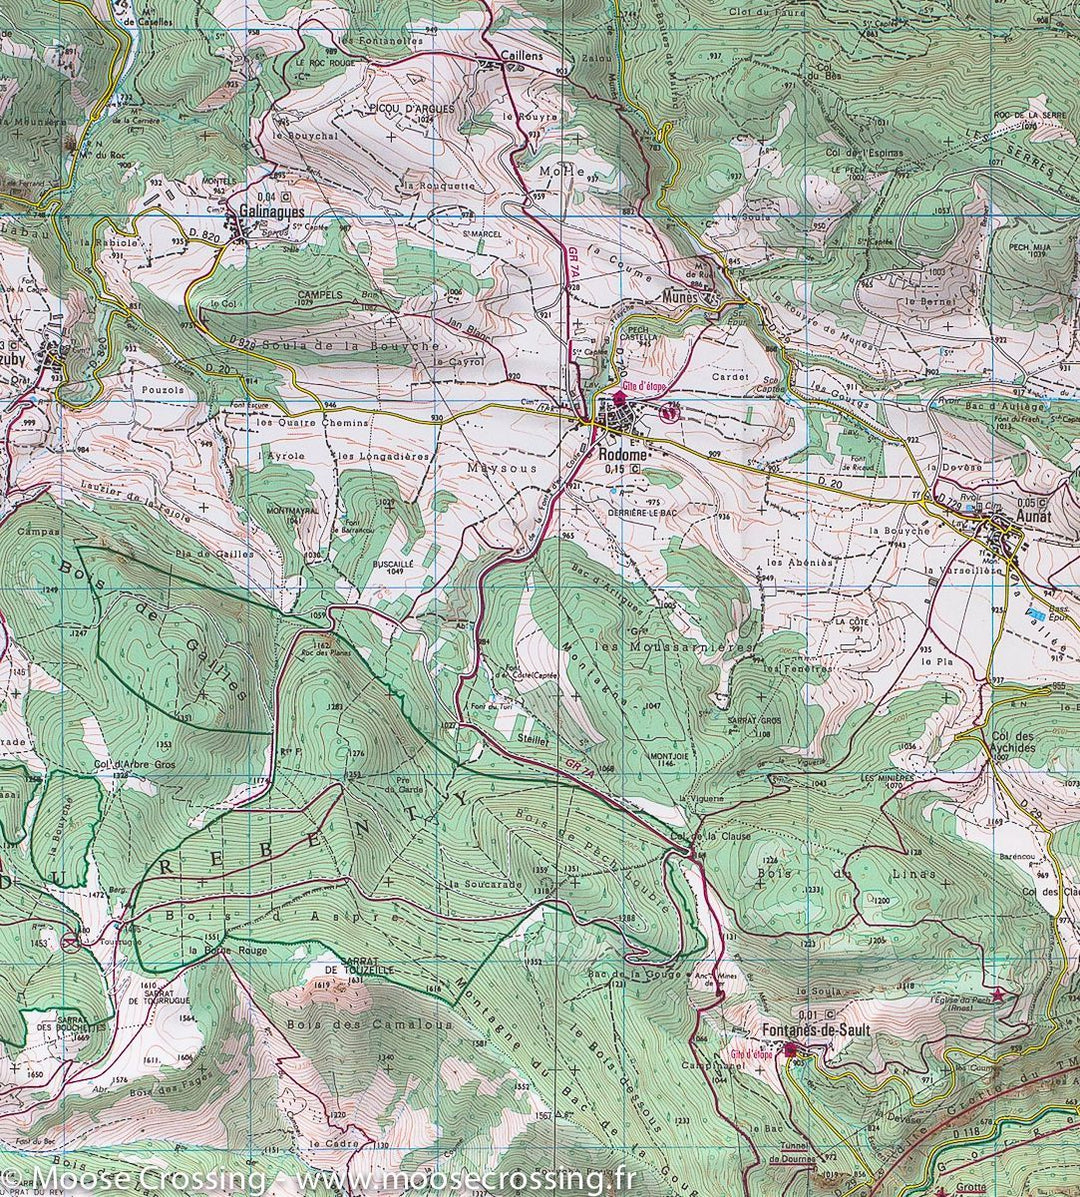 Carte TOP 25 n° 2248 ET - Axat, Quérigut & Gorges de l'Aude (Pyrénées) | IGN carte pliée IGN 